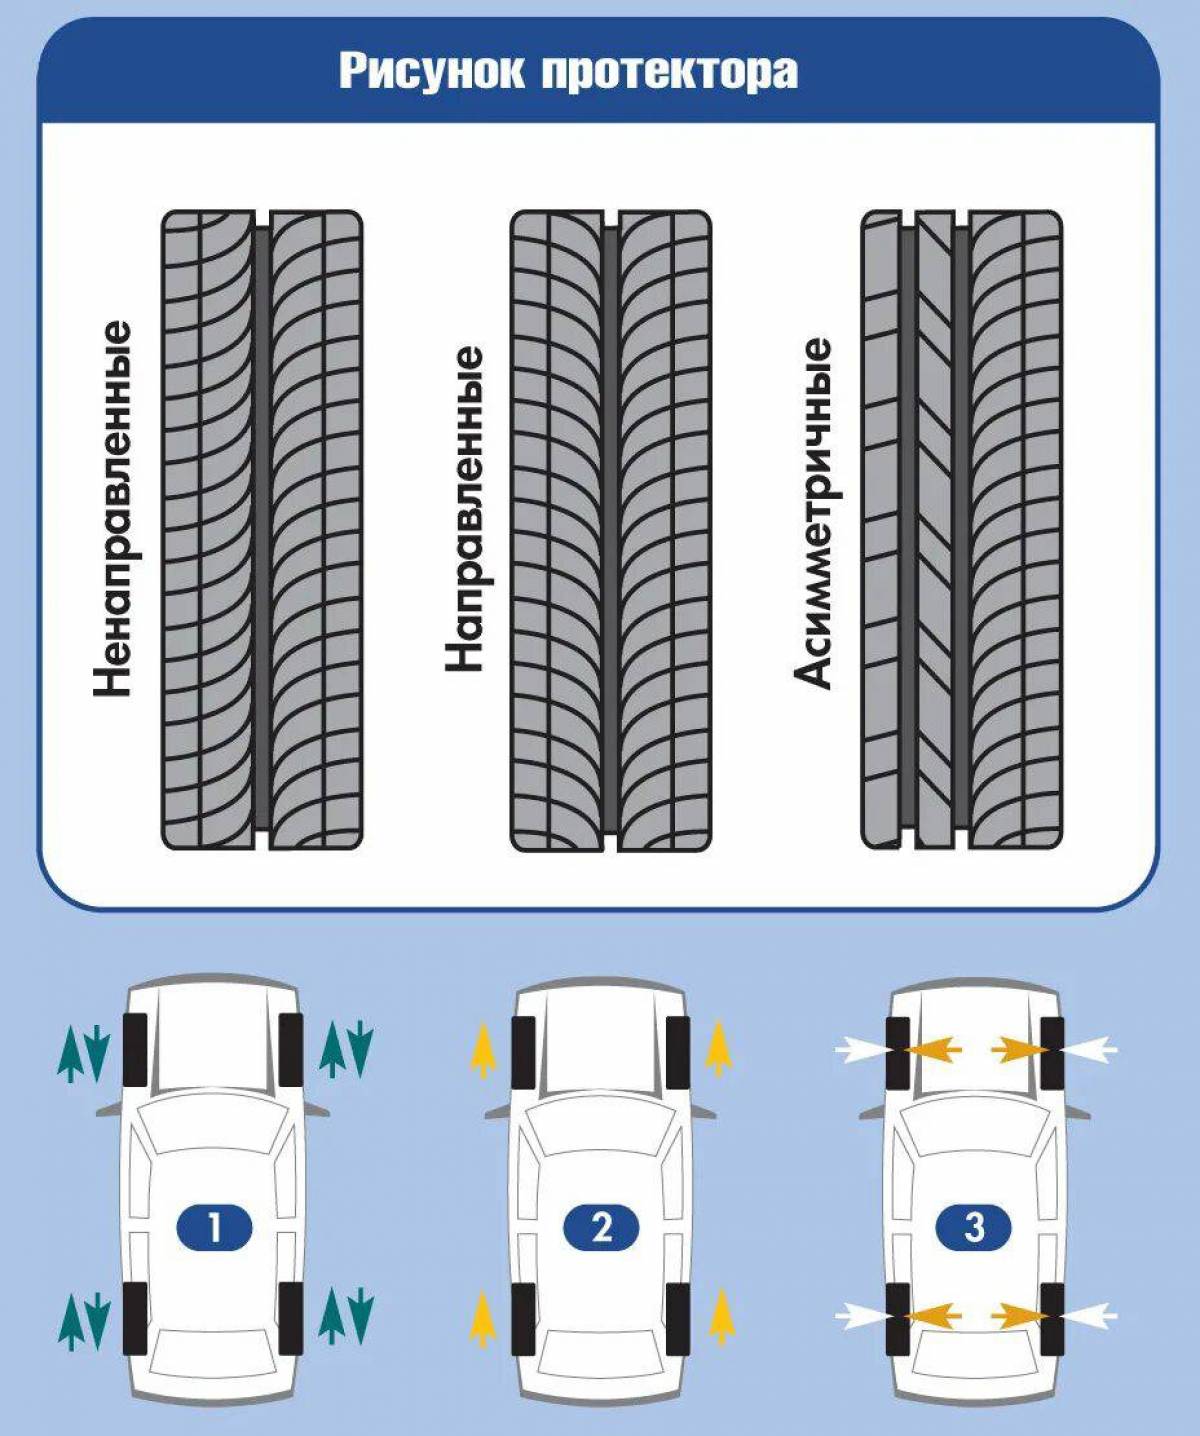 Как определить направление шины по рисунку протектора